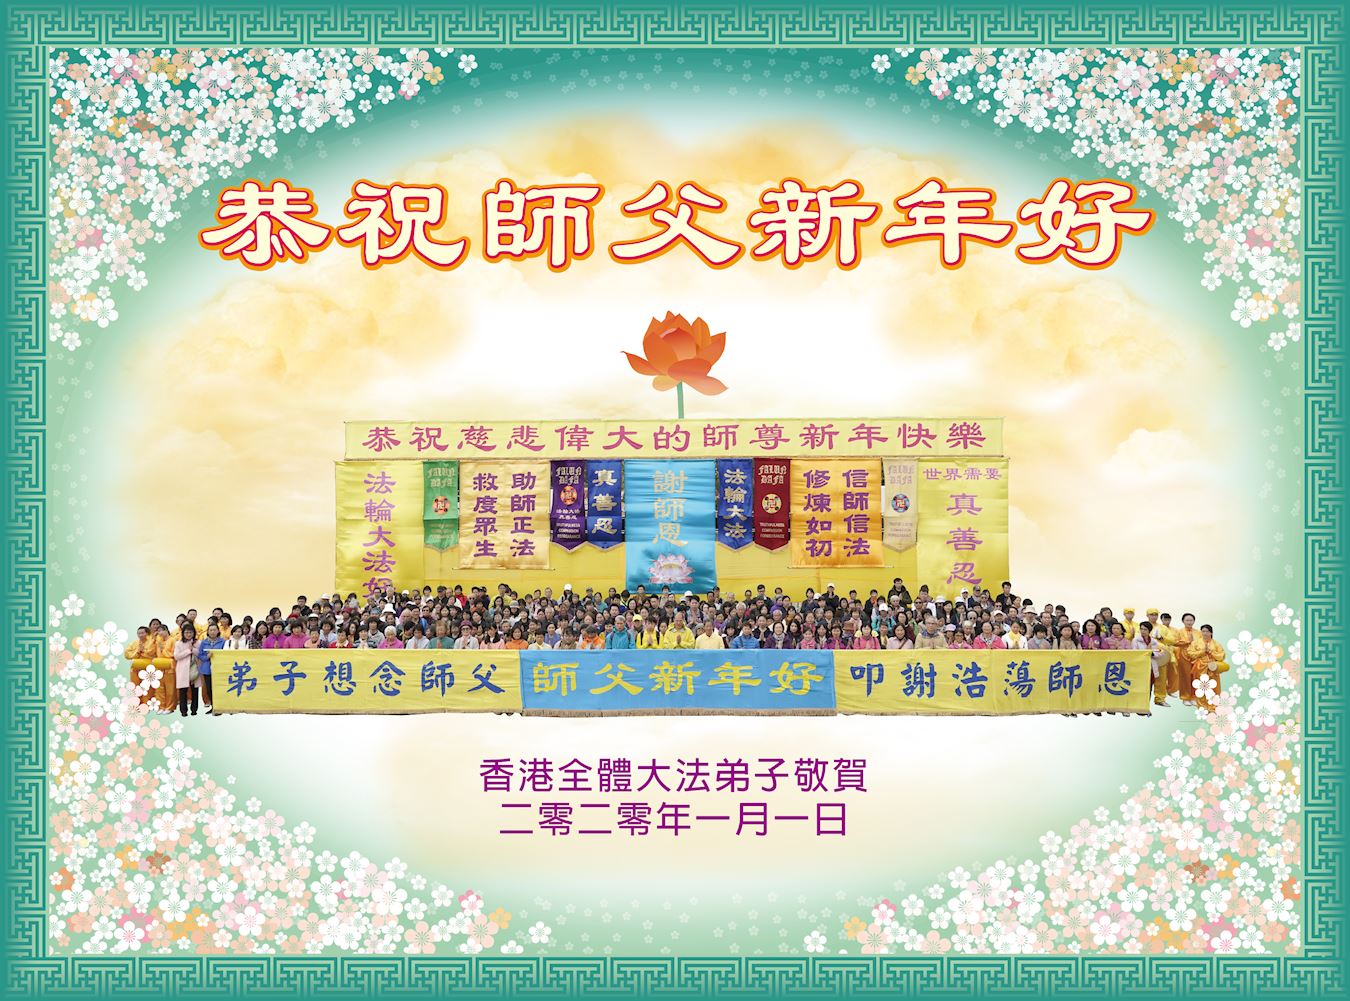 Image for article Hong Kong : Un rassemblement pour souhaiter au Maître une Bonne et Heureuse Année